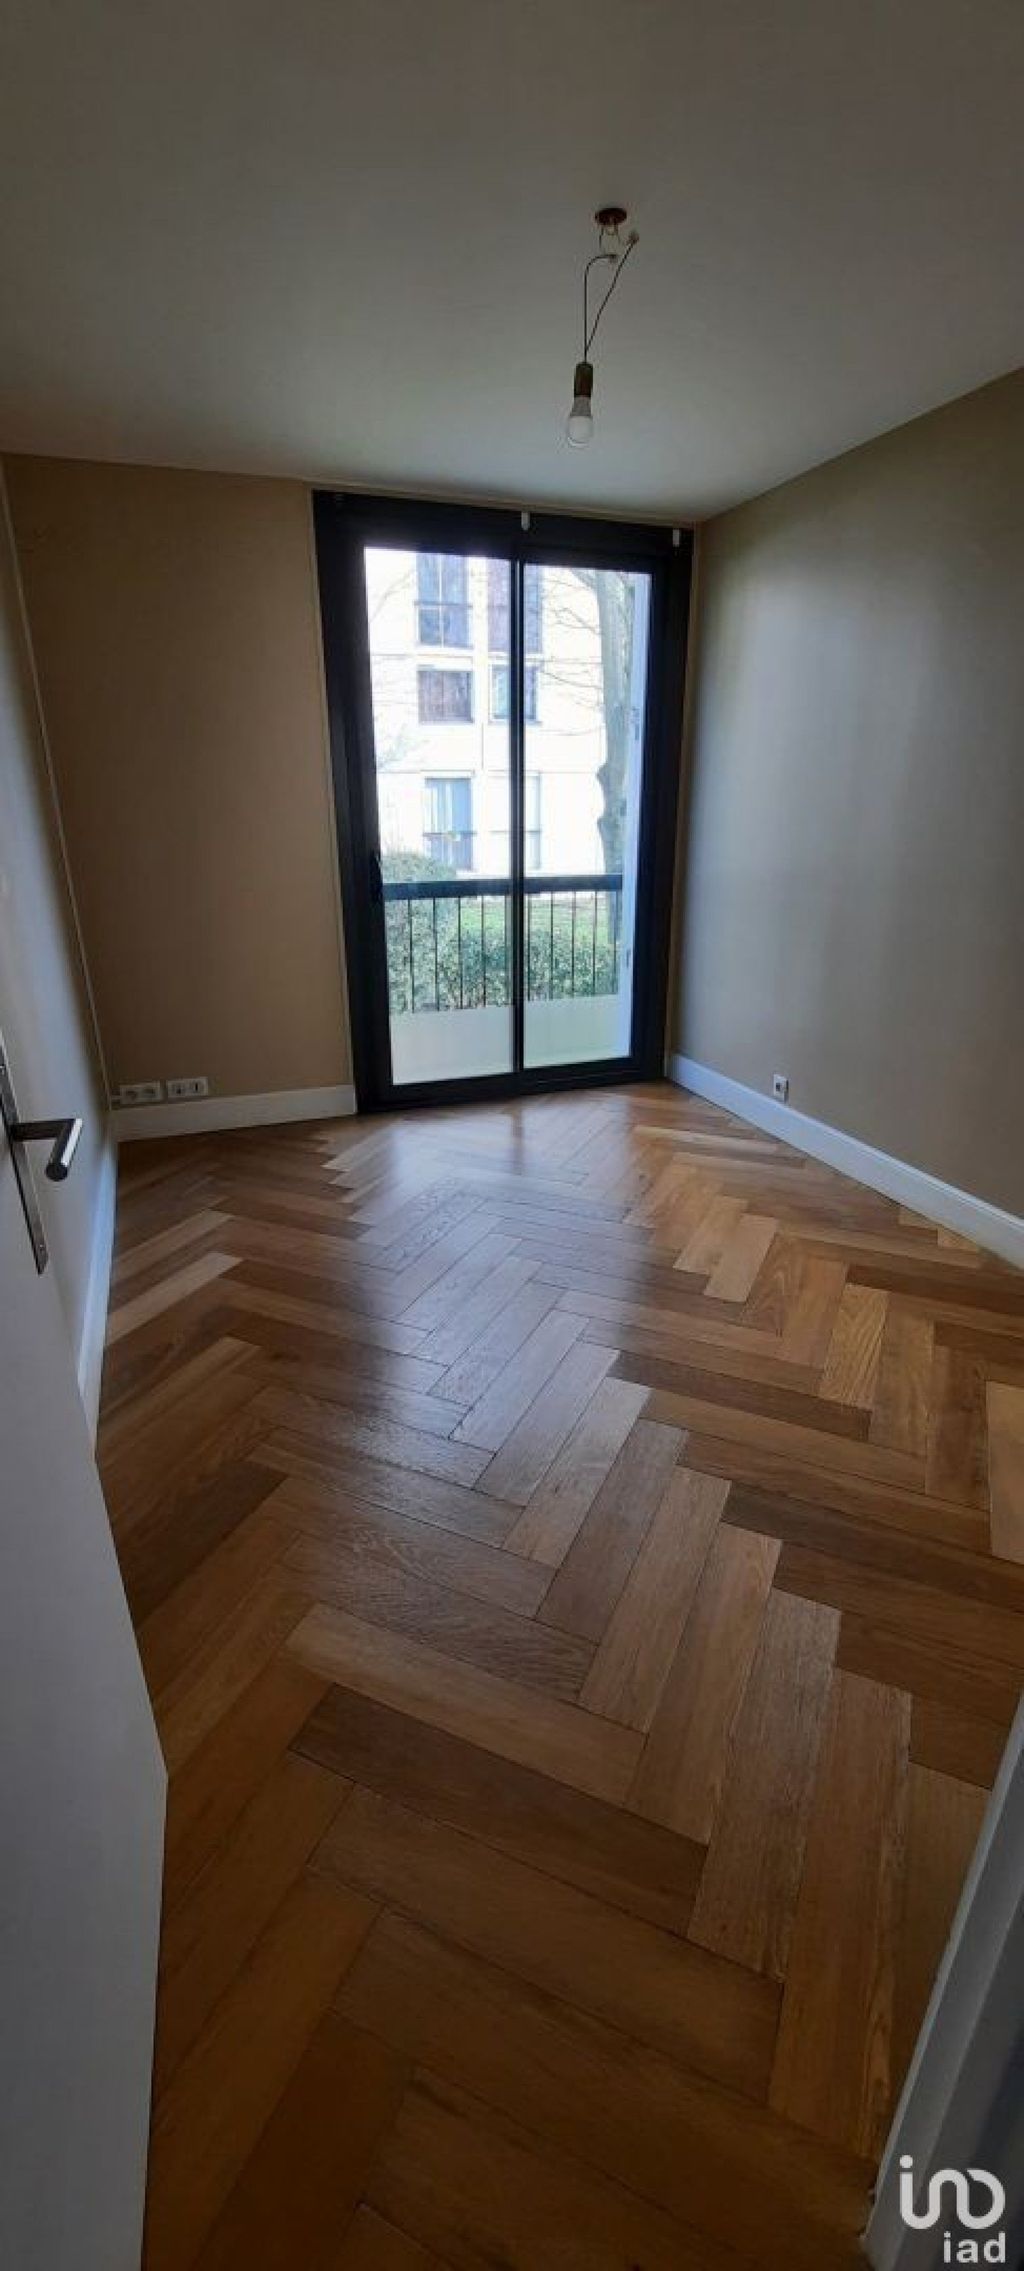 Achat appartement 5 pièce(s) Deuil-la-Barre